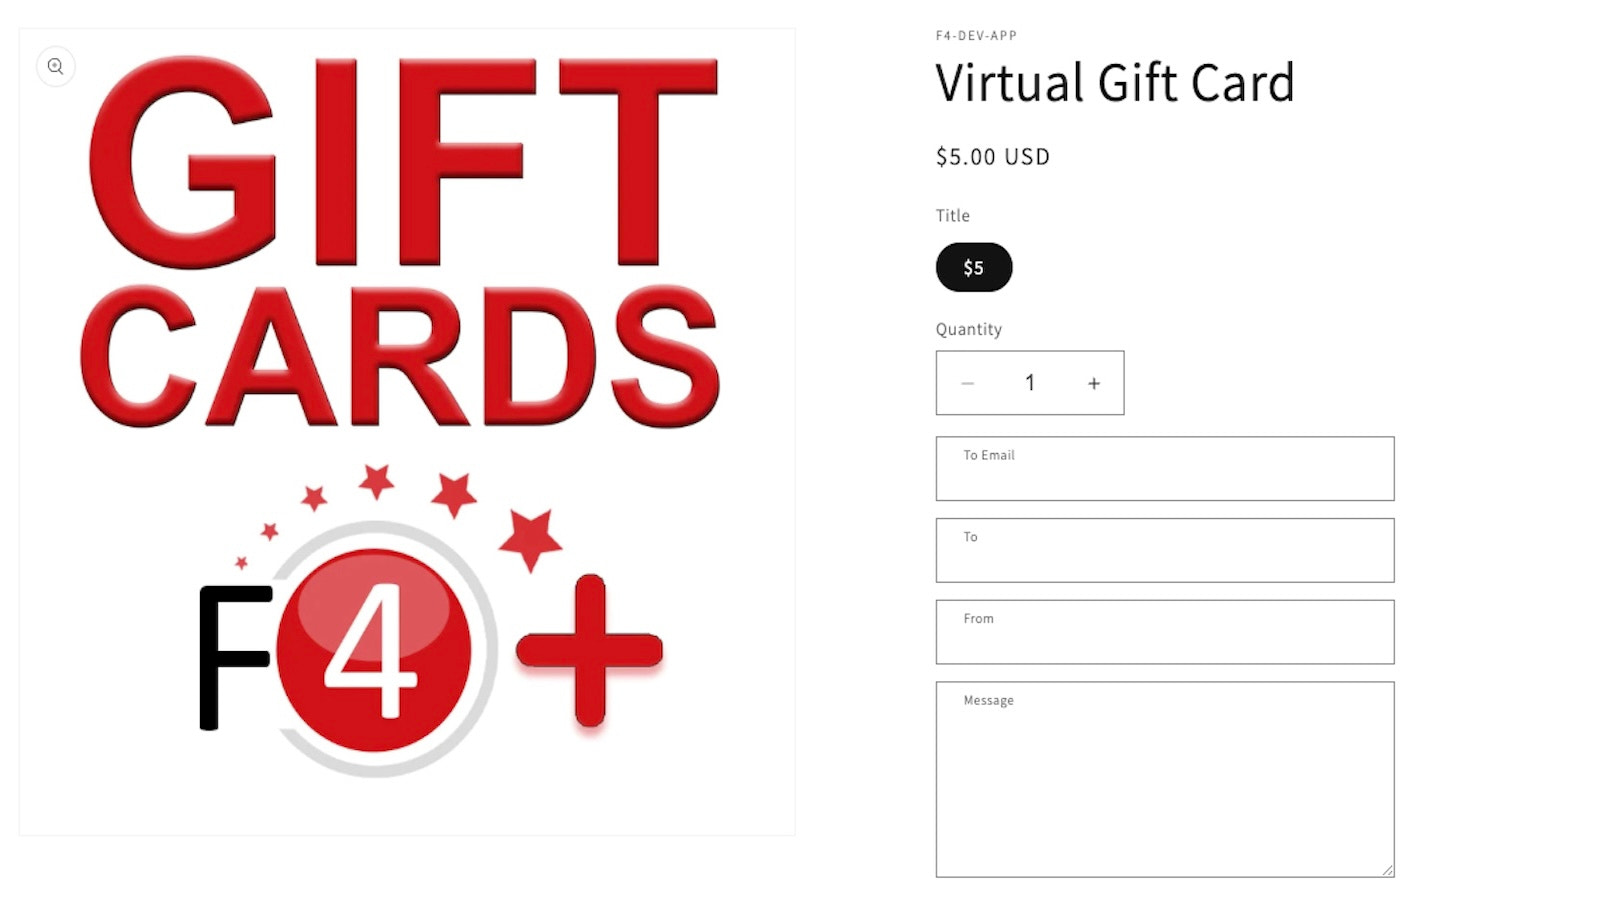 Sälj virtuella och fysiska presentkort online!